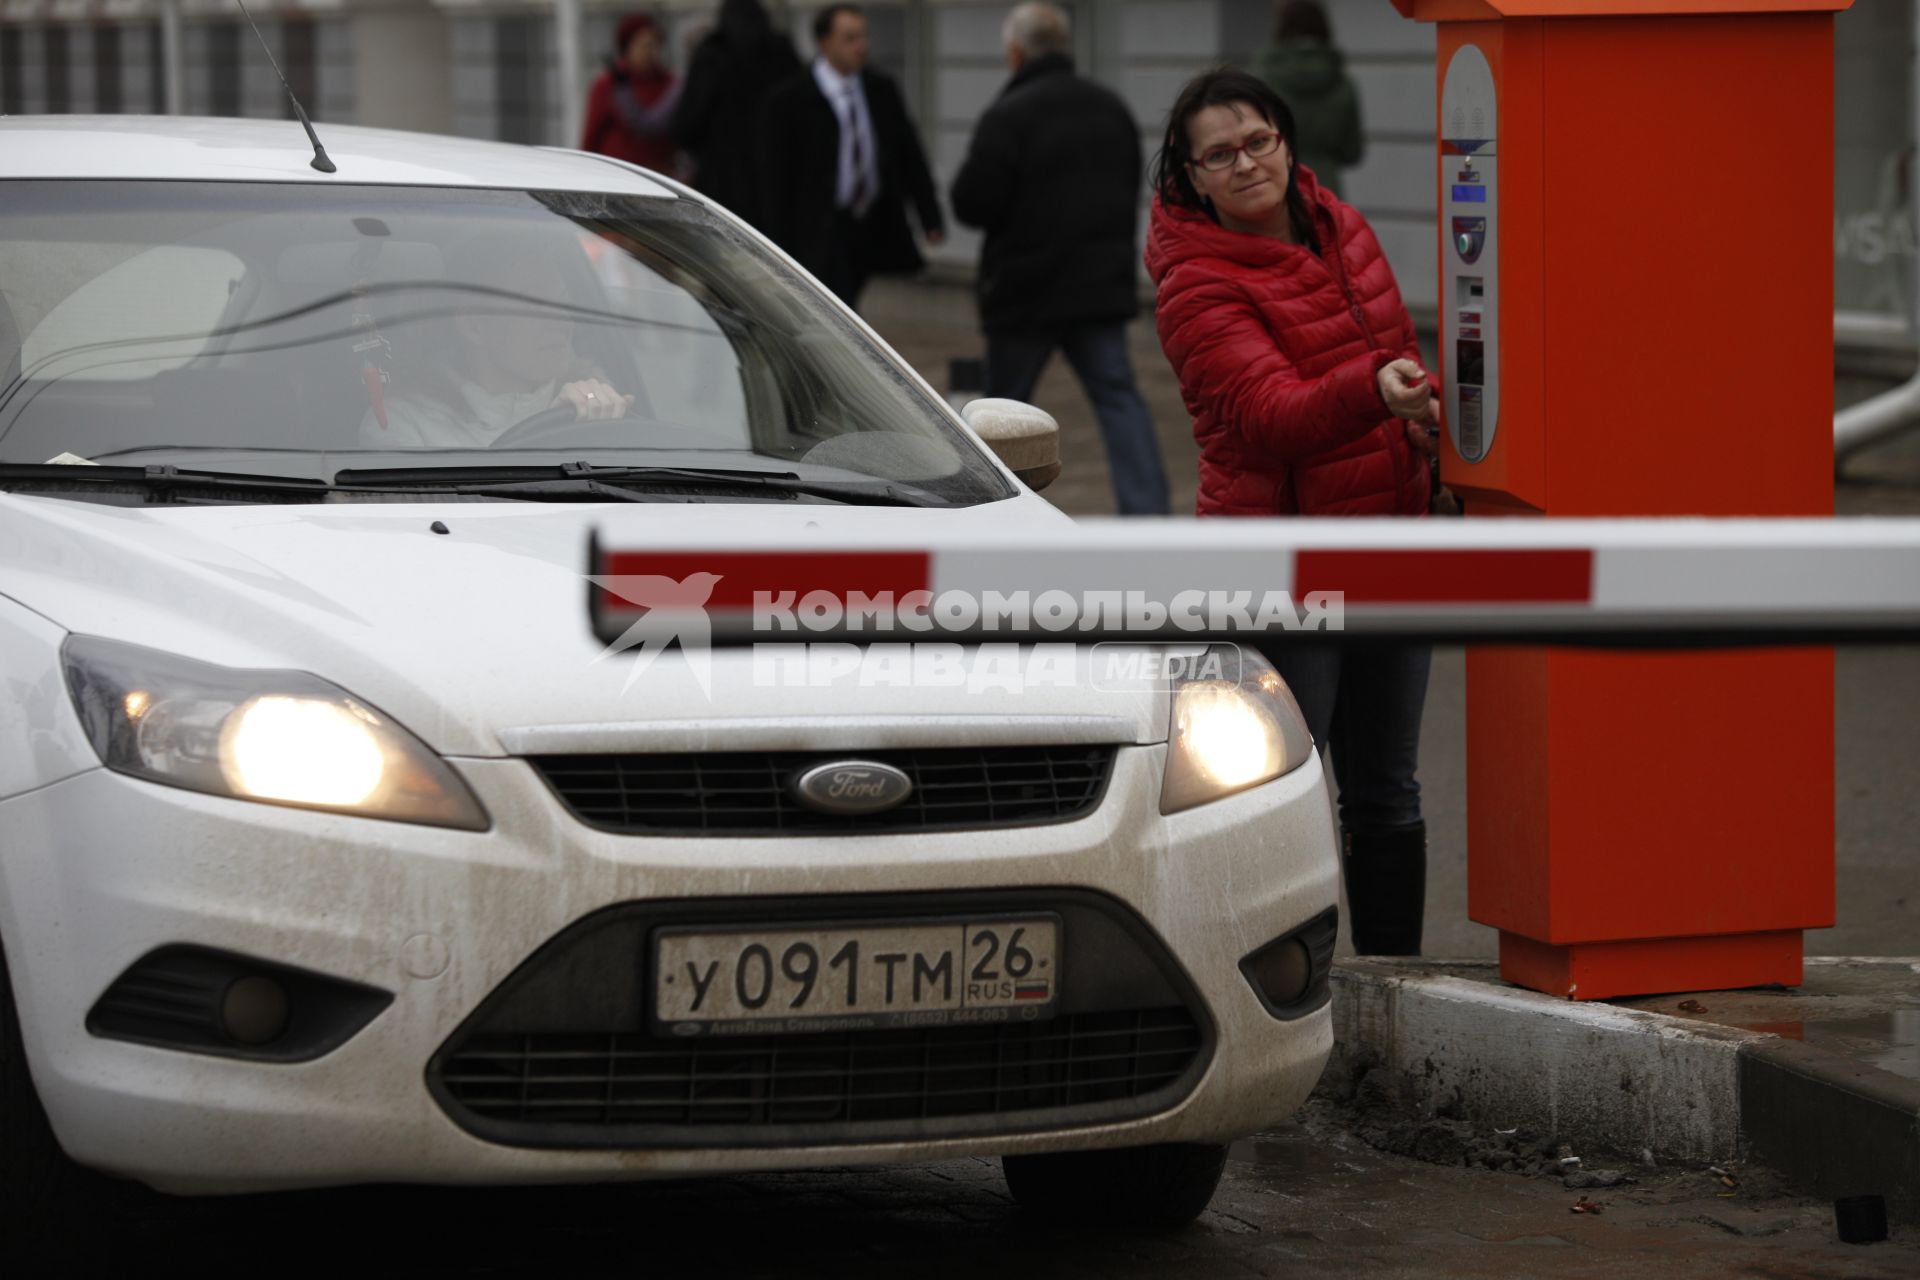 Ставрополь. Женщина оплачивает парковку автомобиля через паркомат на одной из улиц города.